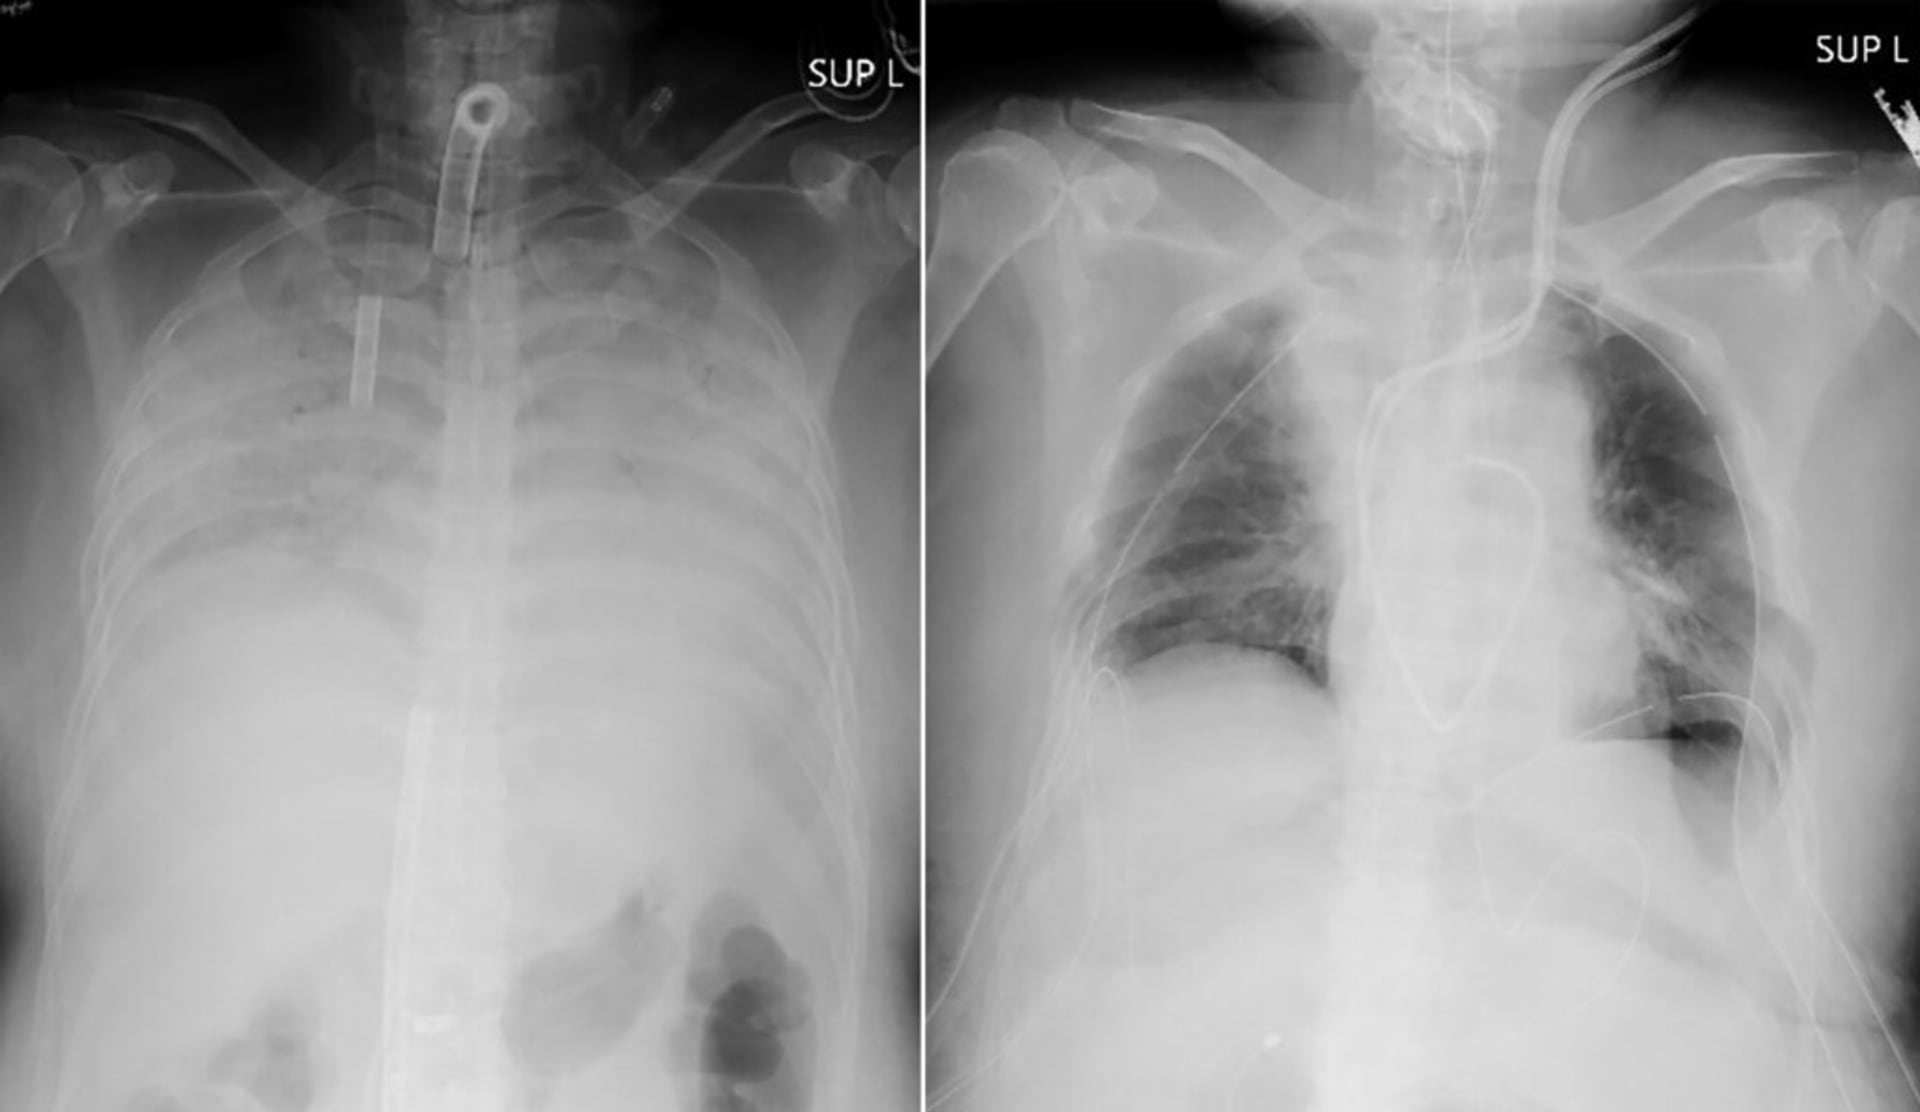 Rentgenové snímky ukazují hrudník pacientky před operací (vlevo) a po ní (vpravo).